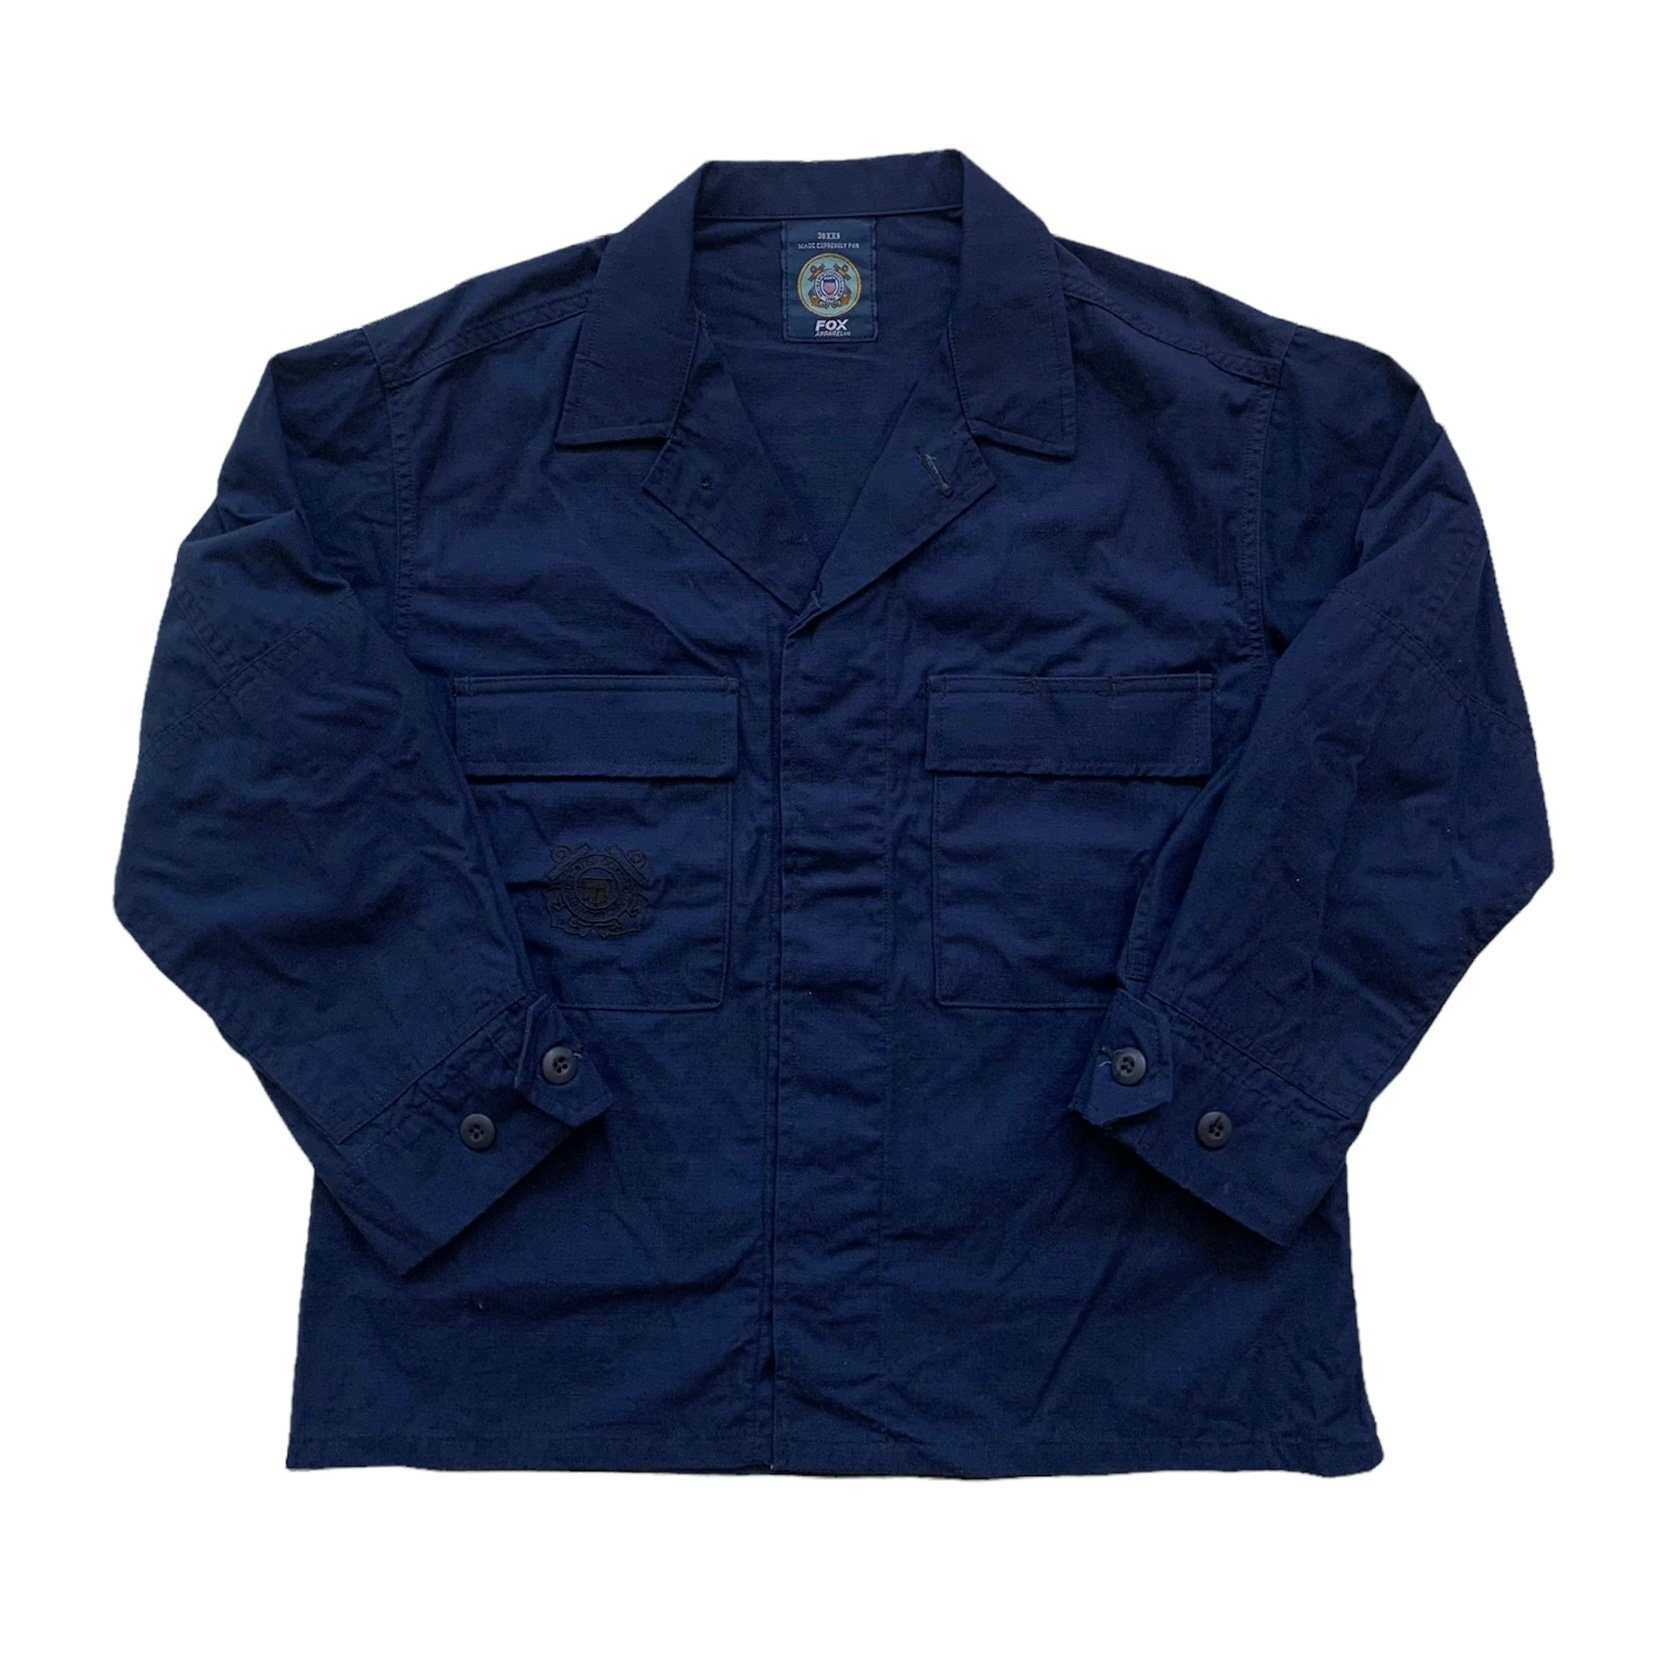 Vintage United States Coast Guard Uscg Fox Apparel Navy Blue Uniform Button Up Shirt Made in Usa Herren Größe M Medium von VintageMensGoods